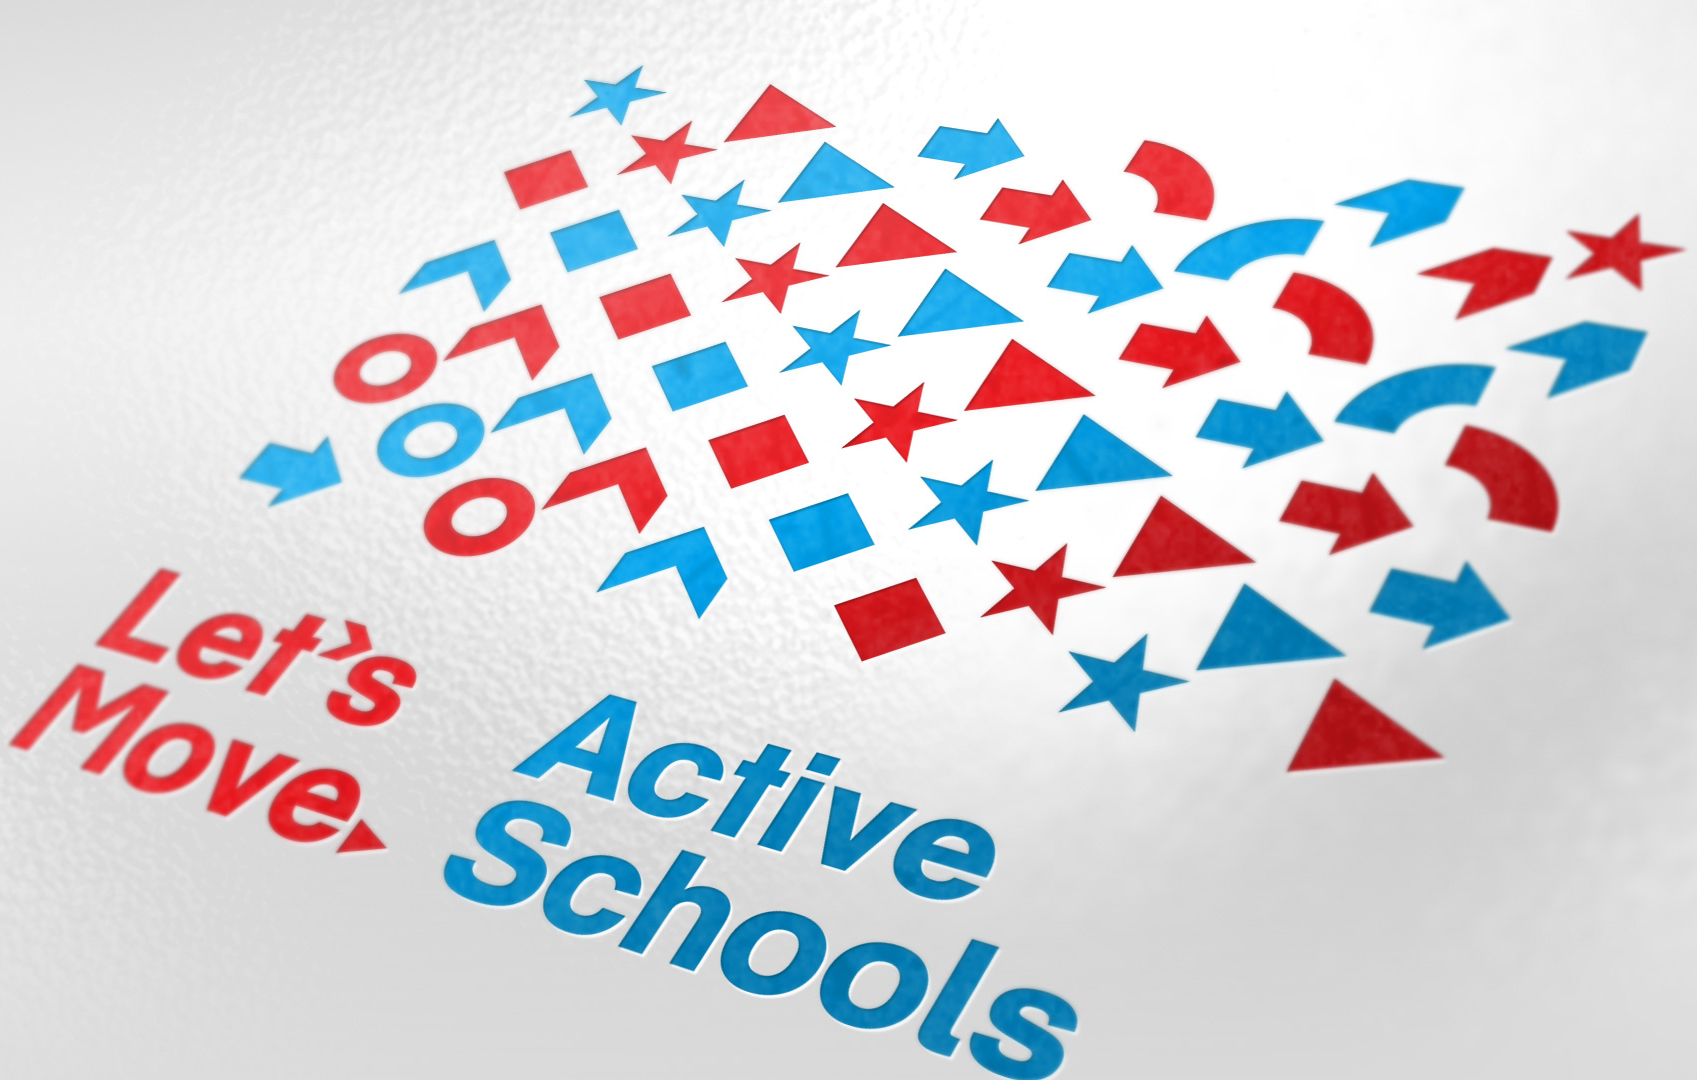 Let's Move Active Schools: Progress Report